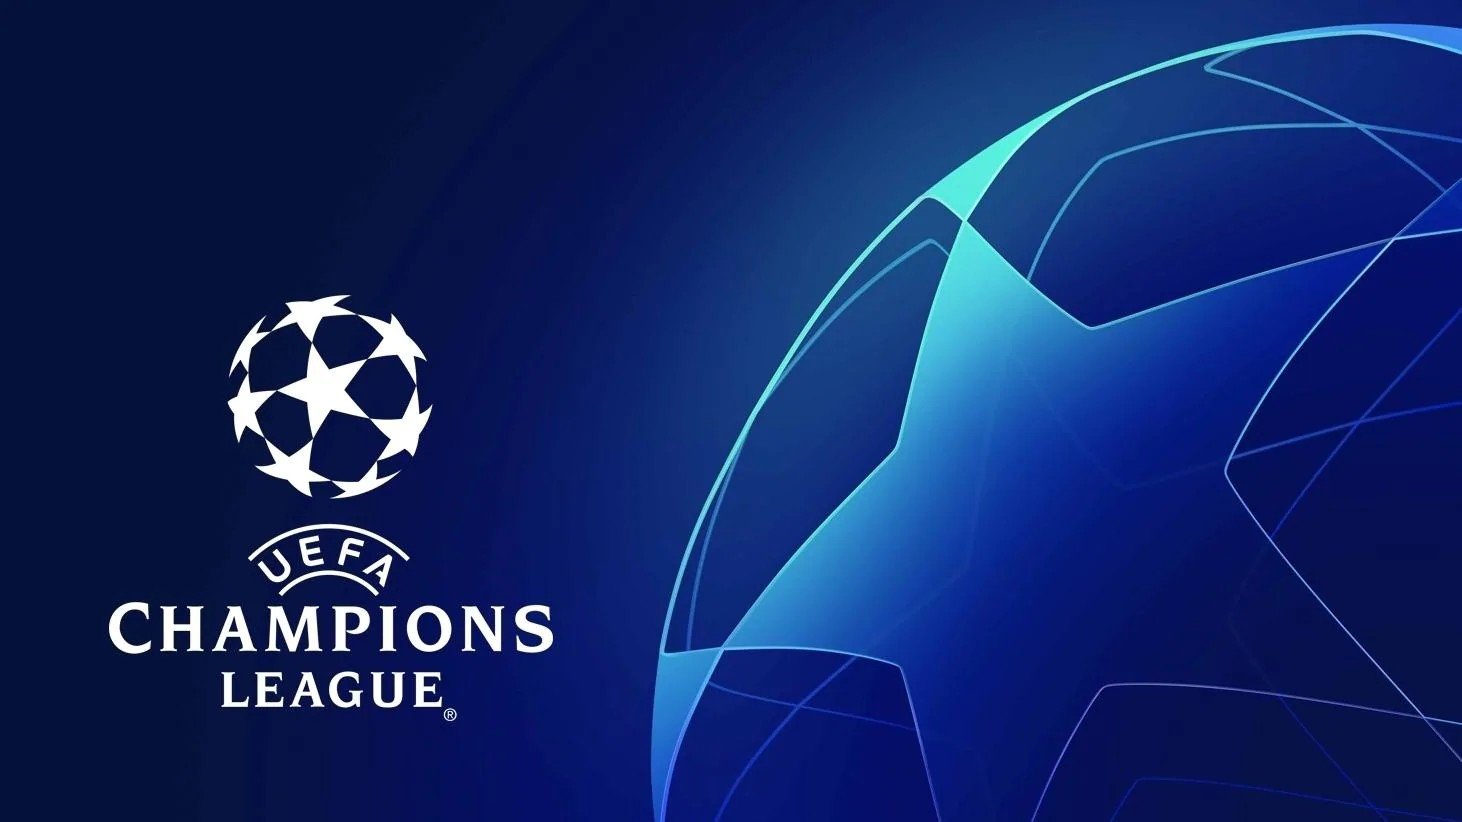 UFFICIALE – Serie A, la rivincita su tutti! 5 in Champions League